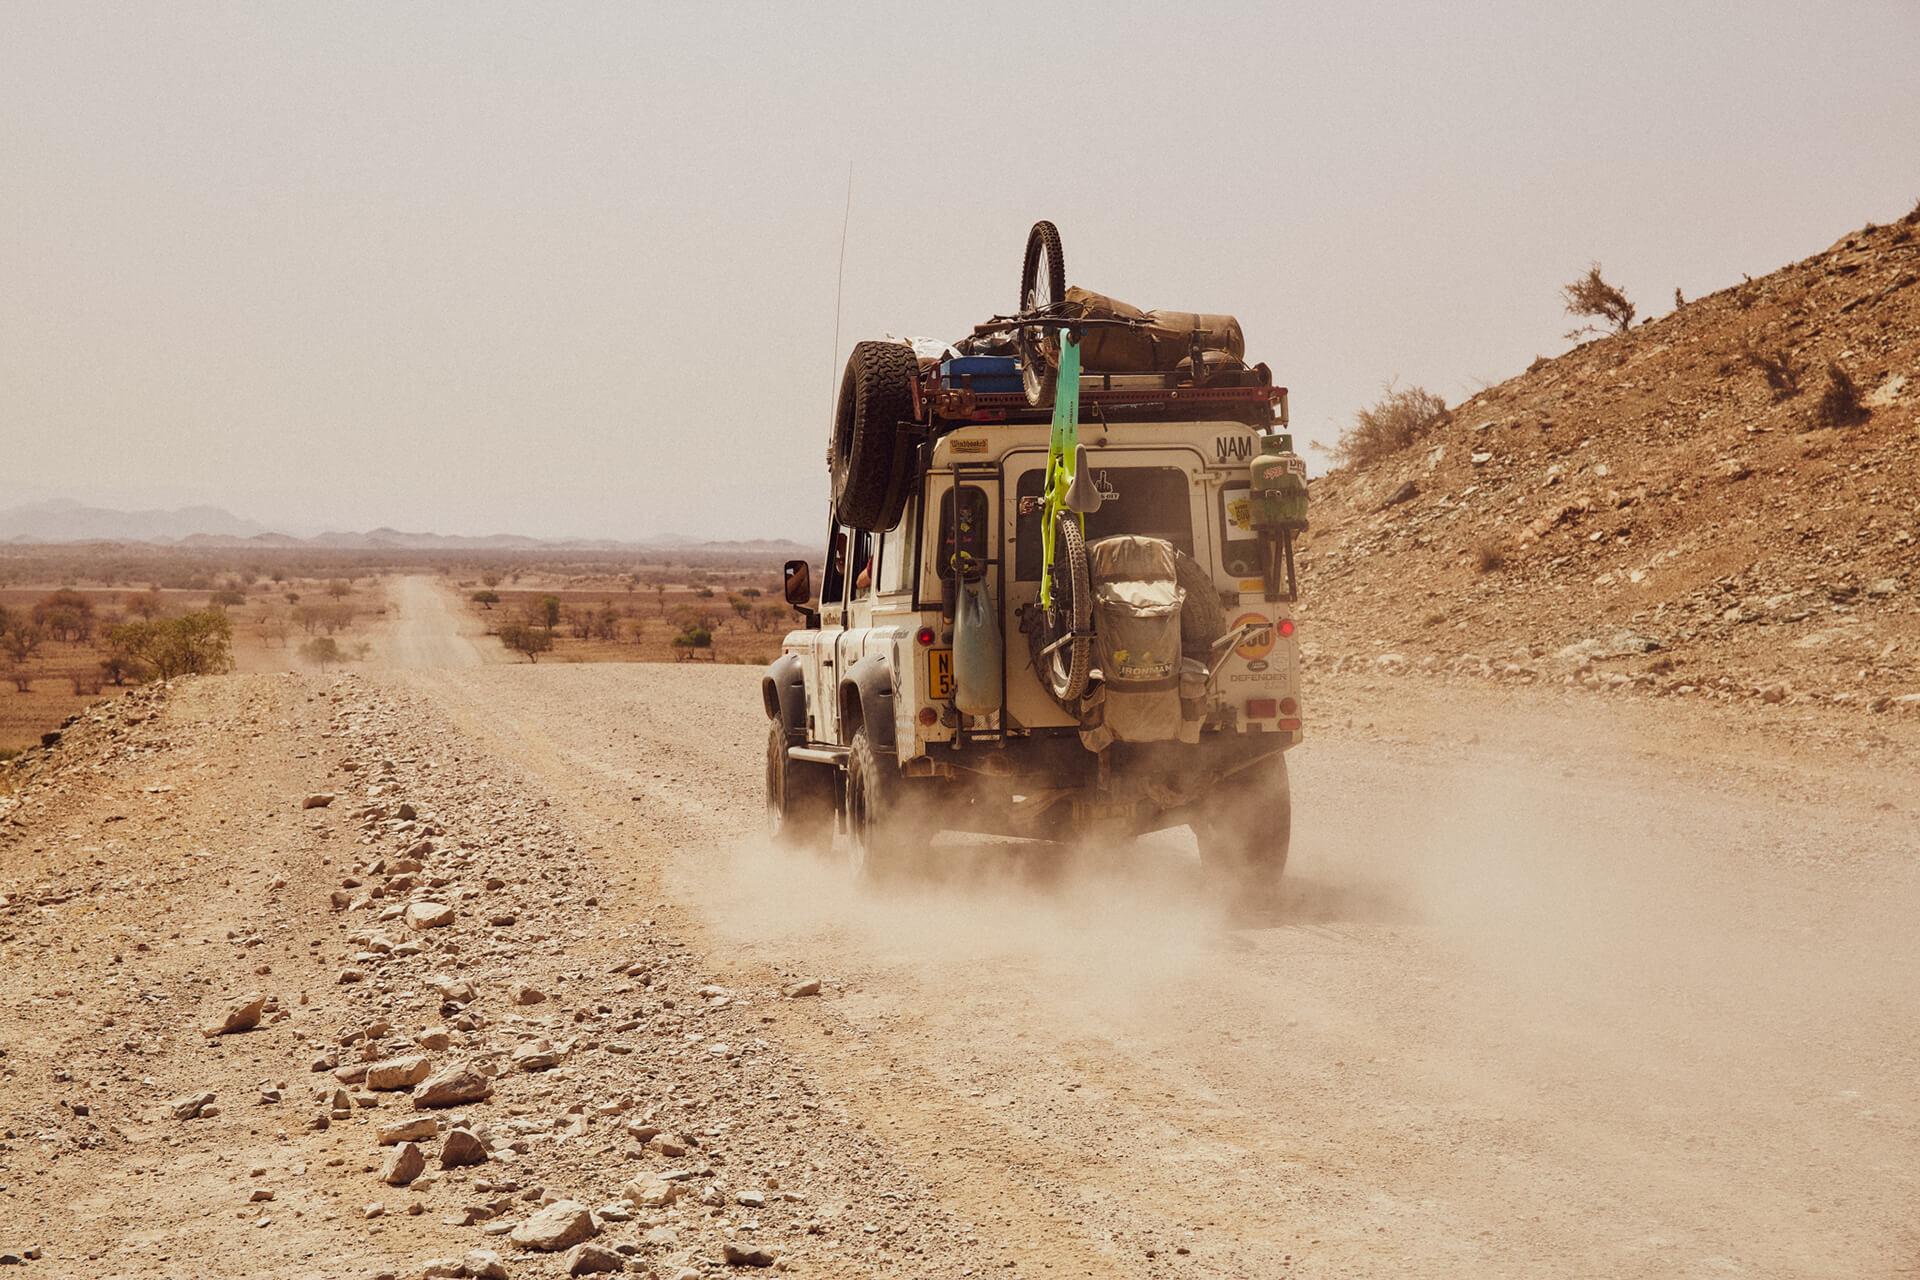 Landrover on the way through Namibia